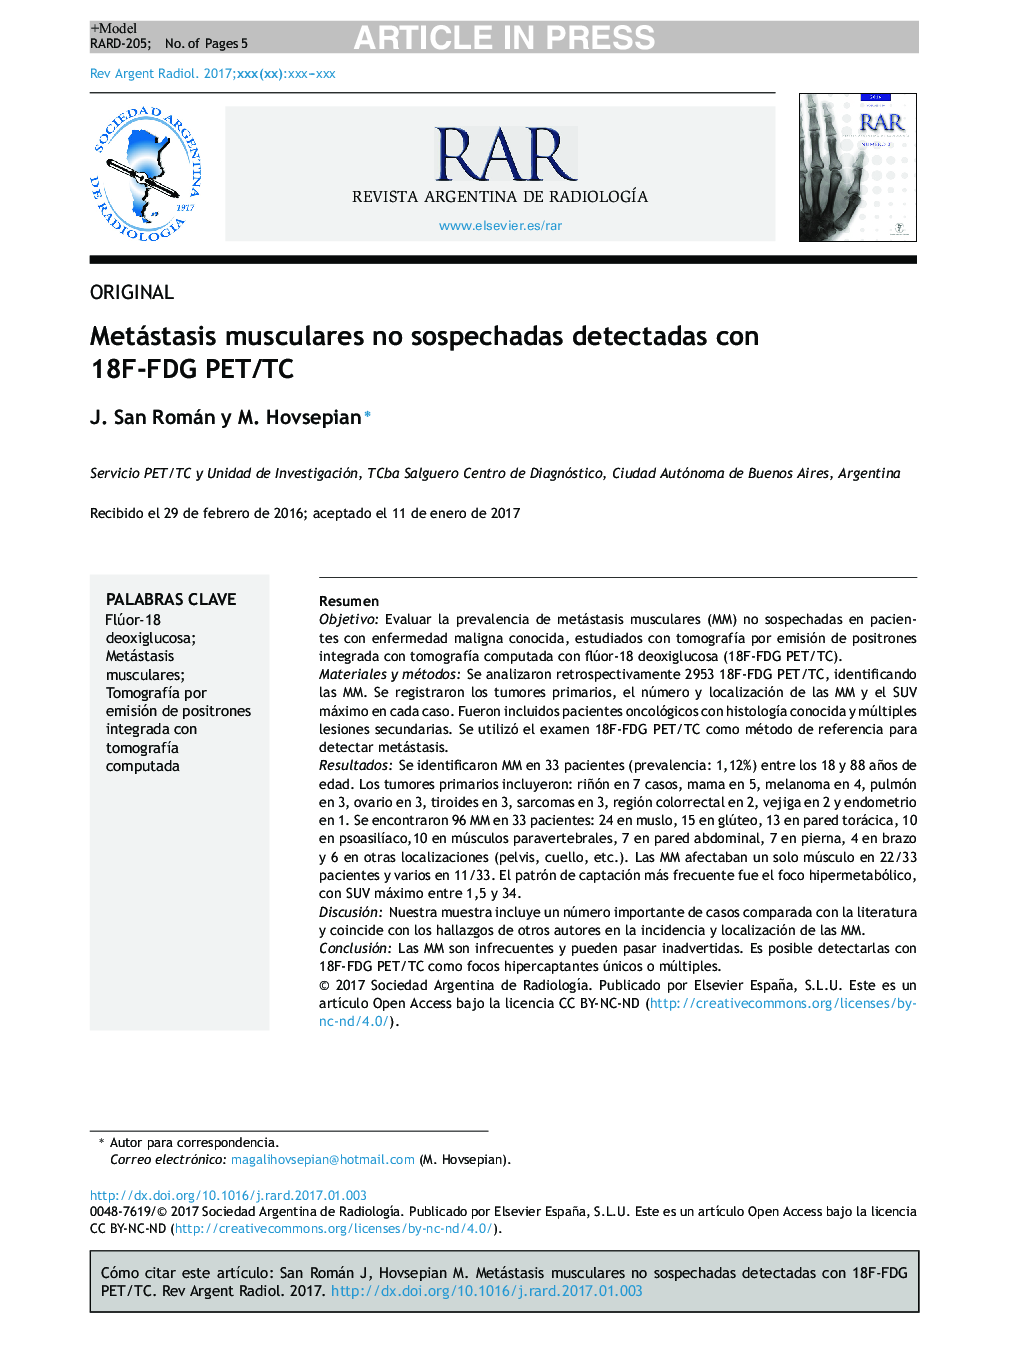 Metástasis musculares no sospechadas detectadas con 18F-FDG PET/TC